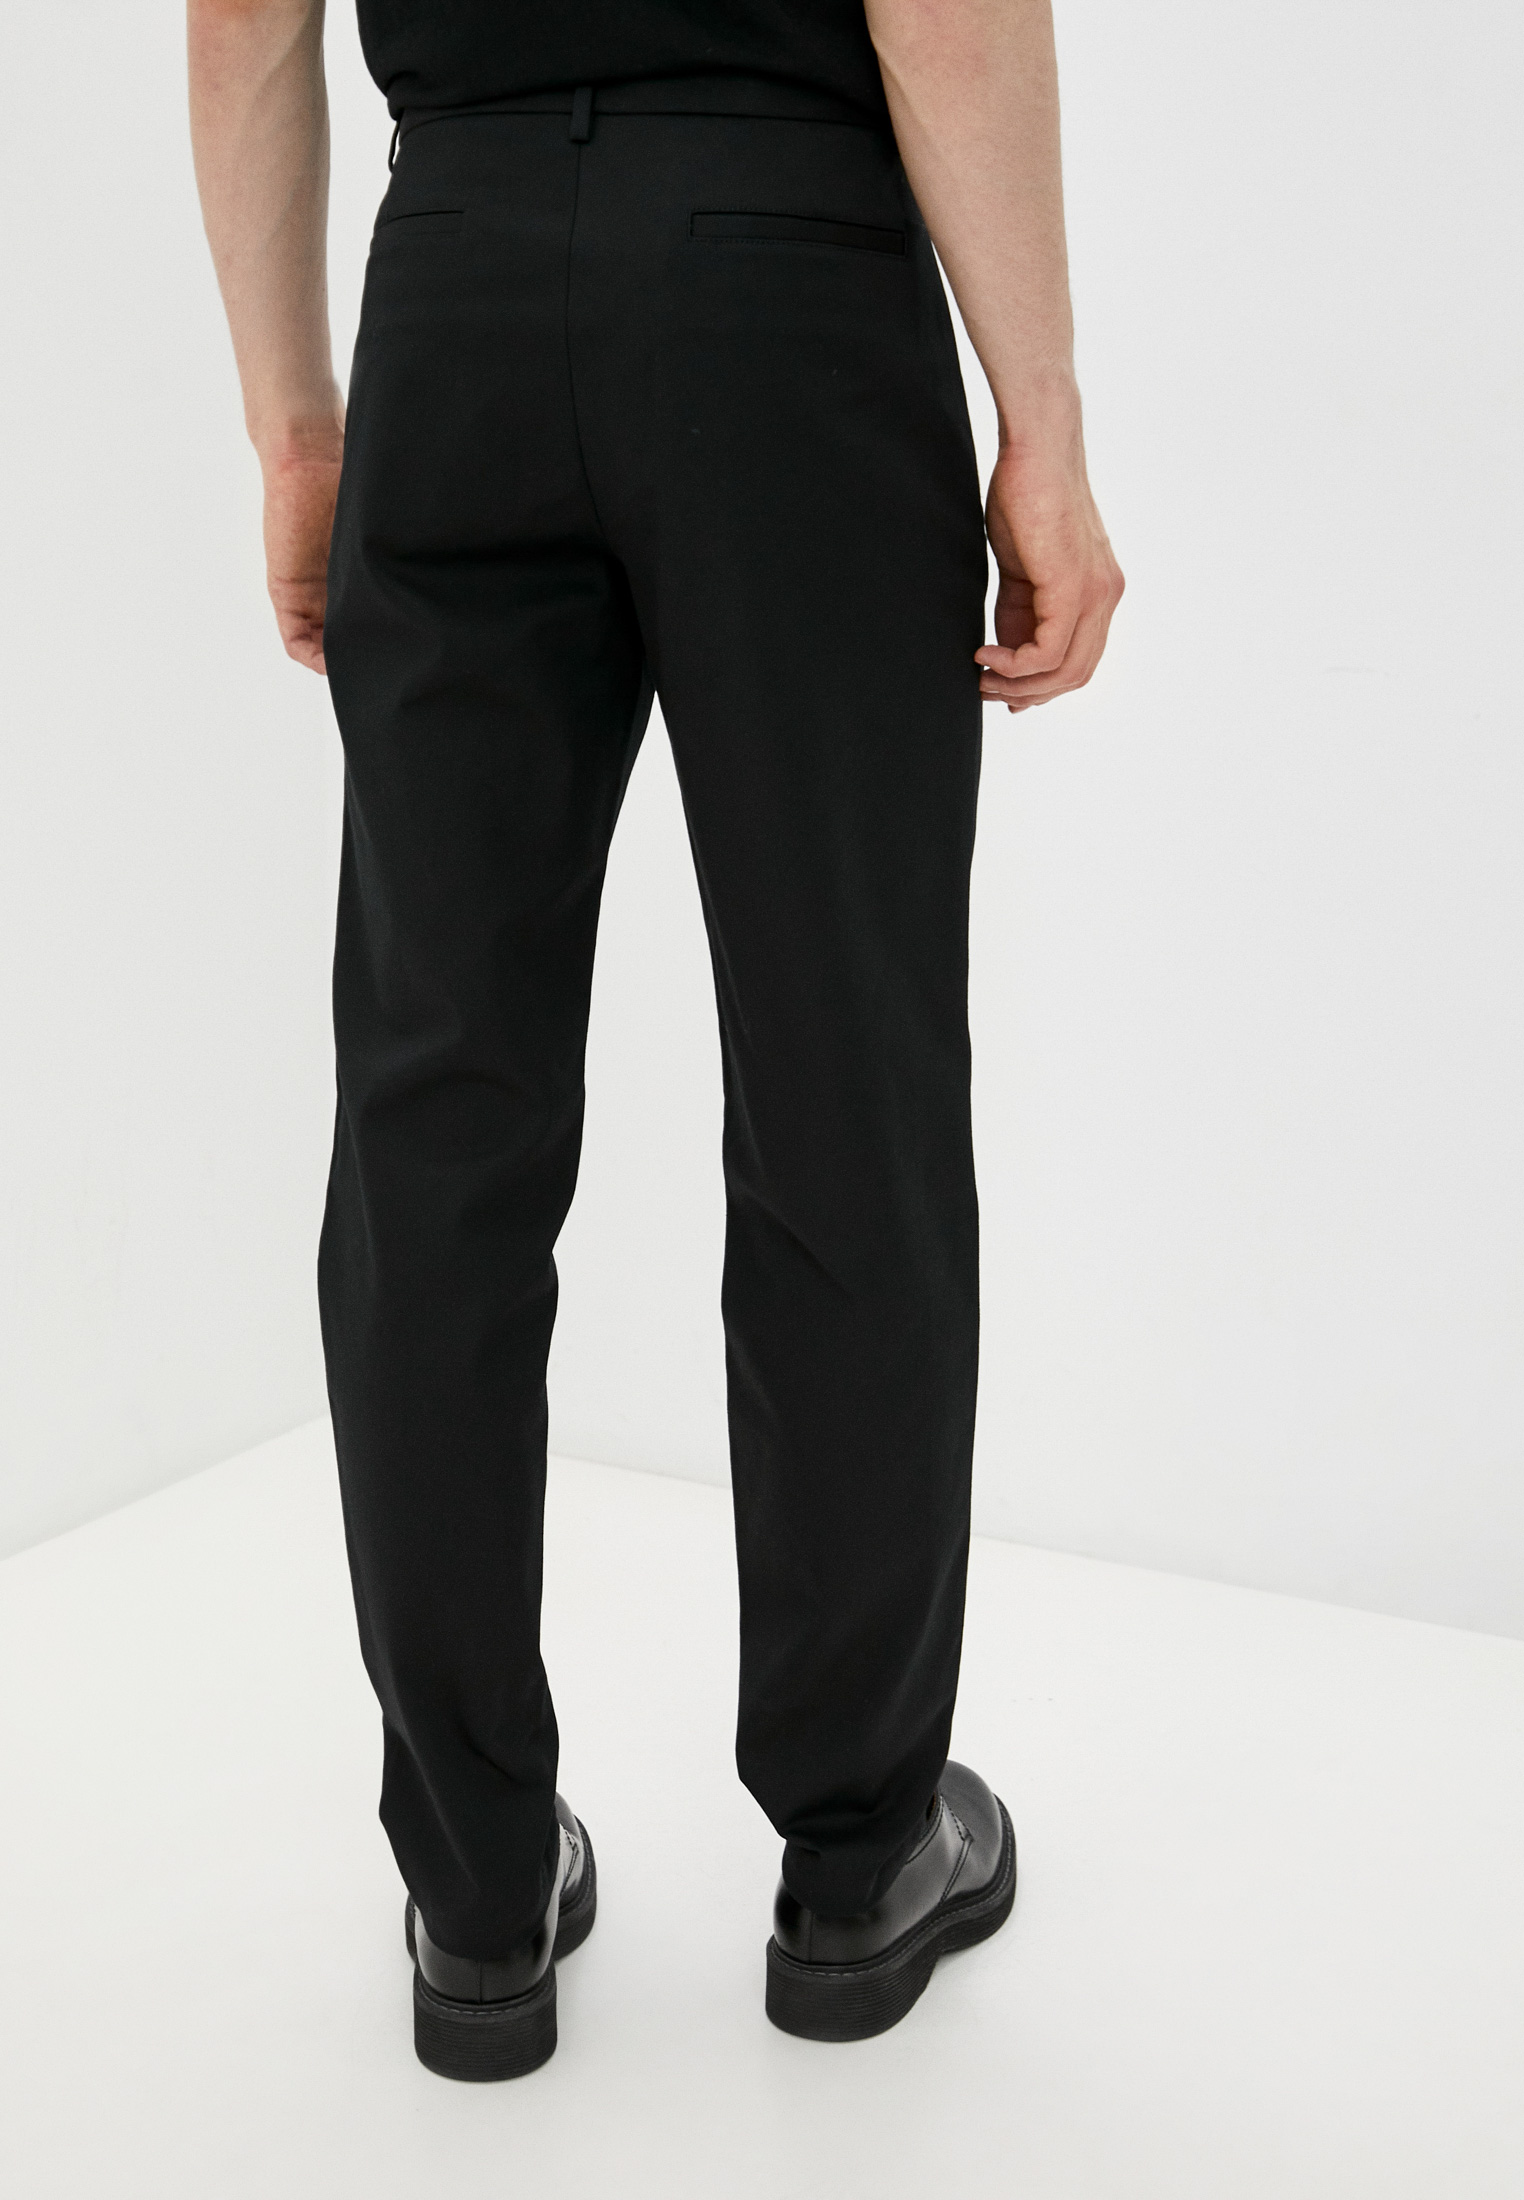 Мужские повседневные брюки Emporio Armani (Эмпорио Армани) W1P270 W1017: изображение 4